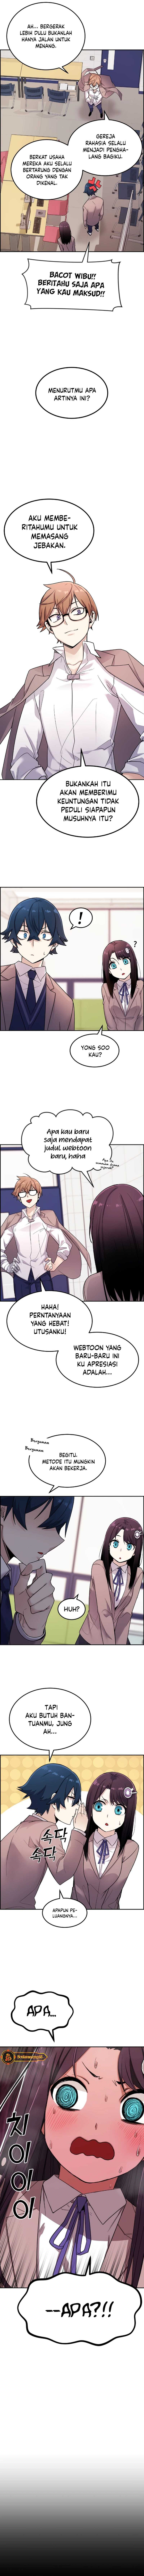 Webtoon Character Na Kang Lim Chapter 07